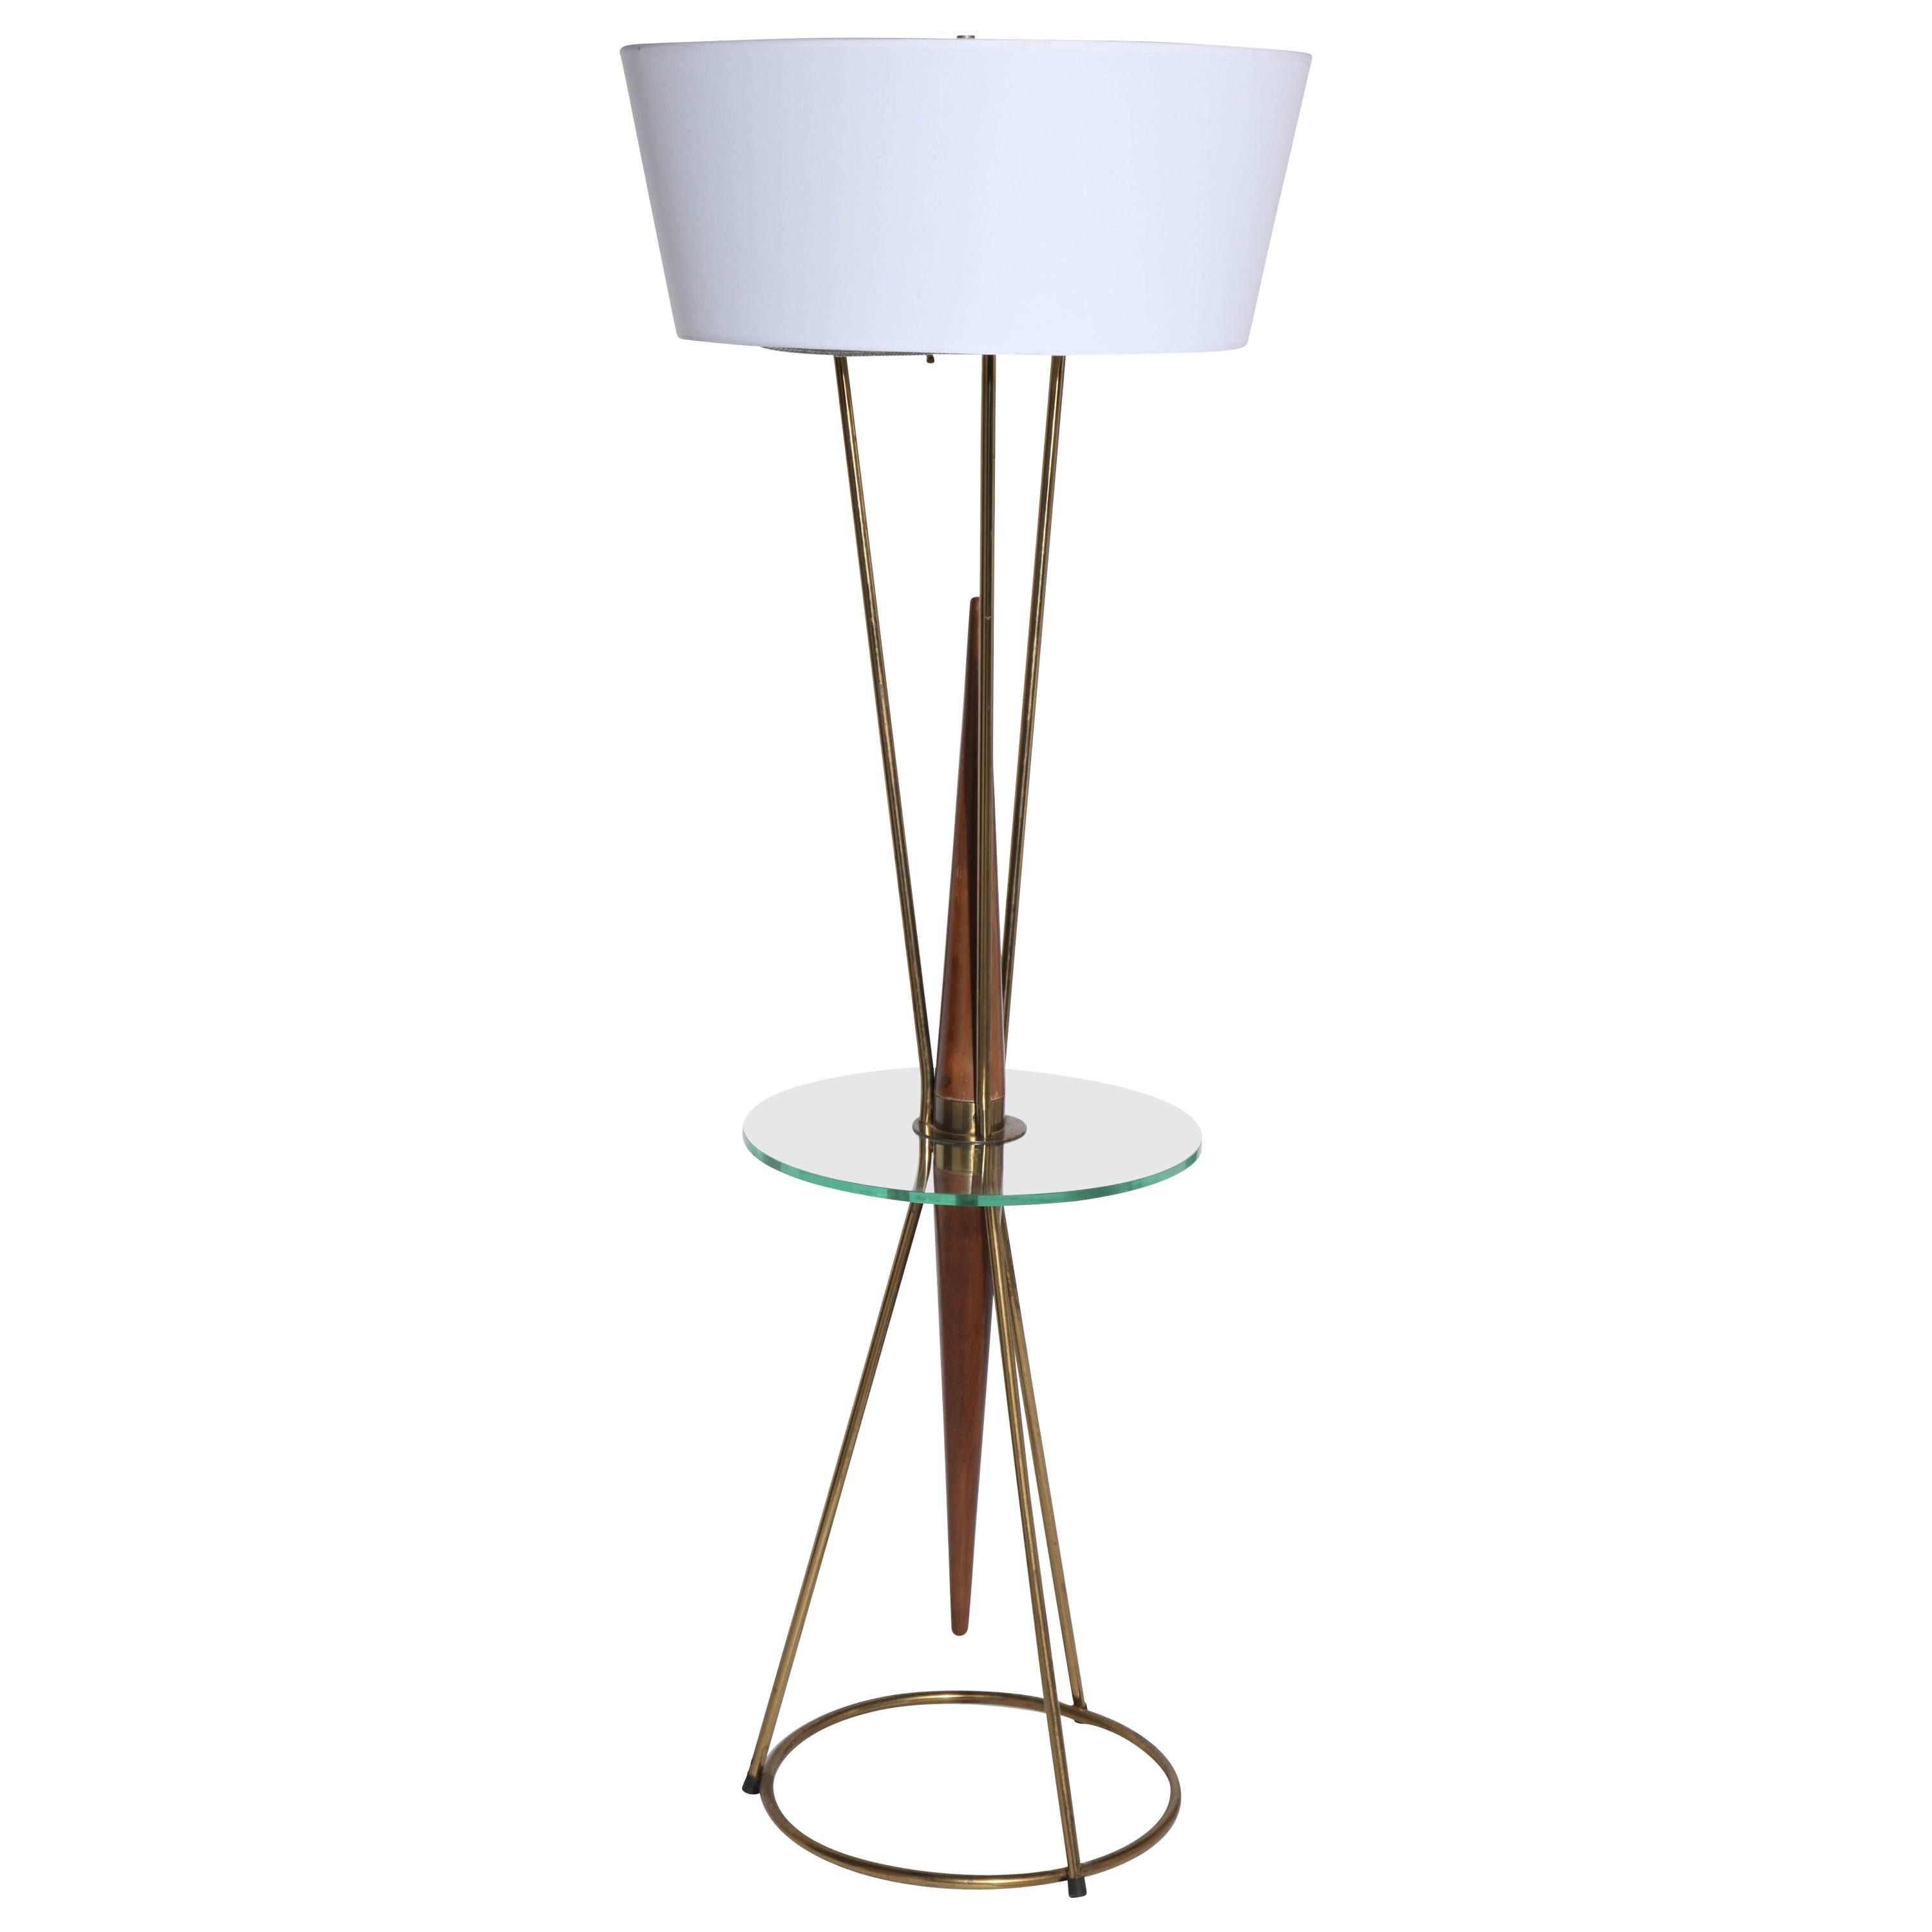 Gerald Thurston, Beistelltisch-Stehlampe aus Nussbaum, Messing und Glas im Lightolier-Stil